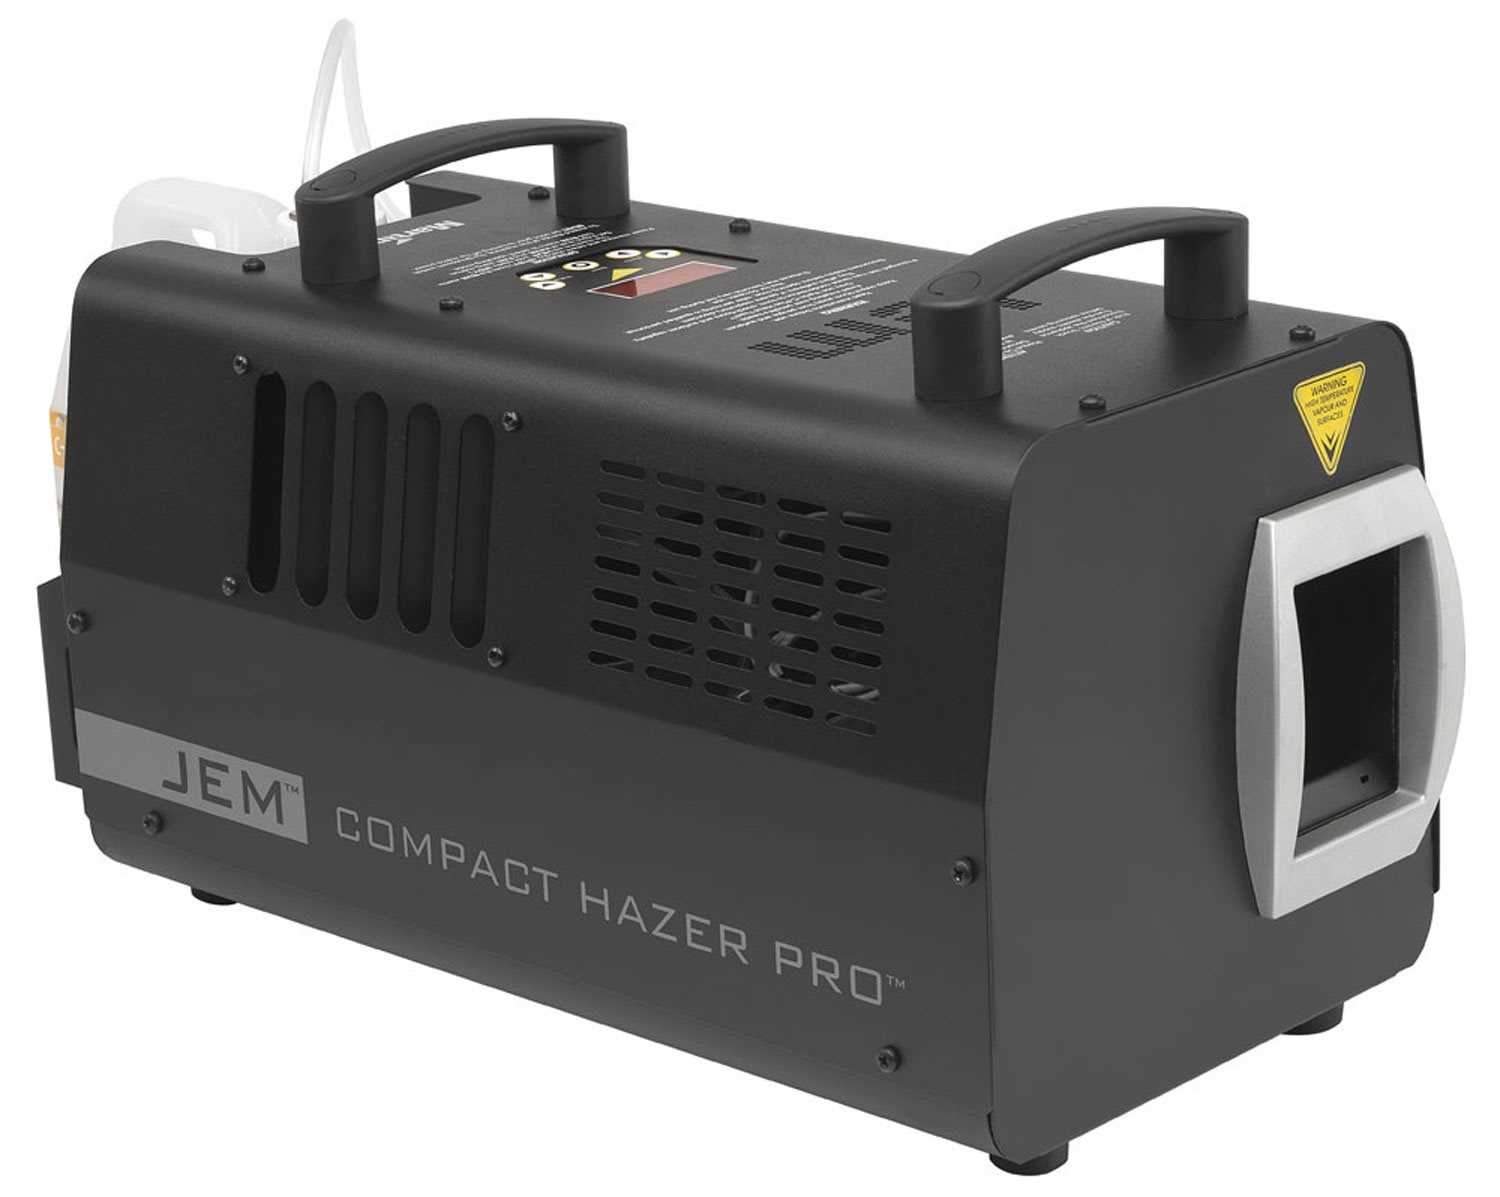 Martin JEM Compact Hazer Pro 120V DMX Haze Machine - ProSound and Stage Lighting